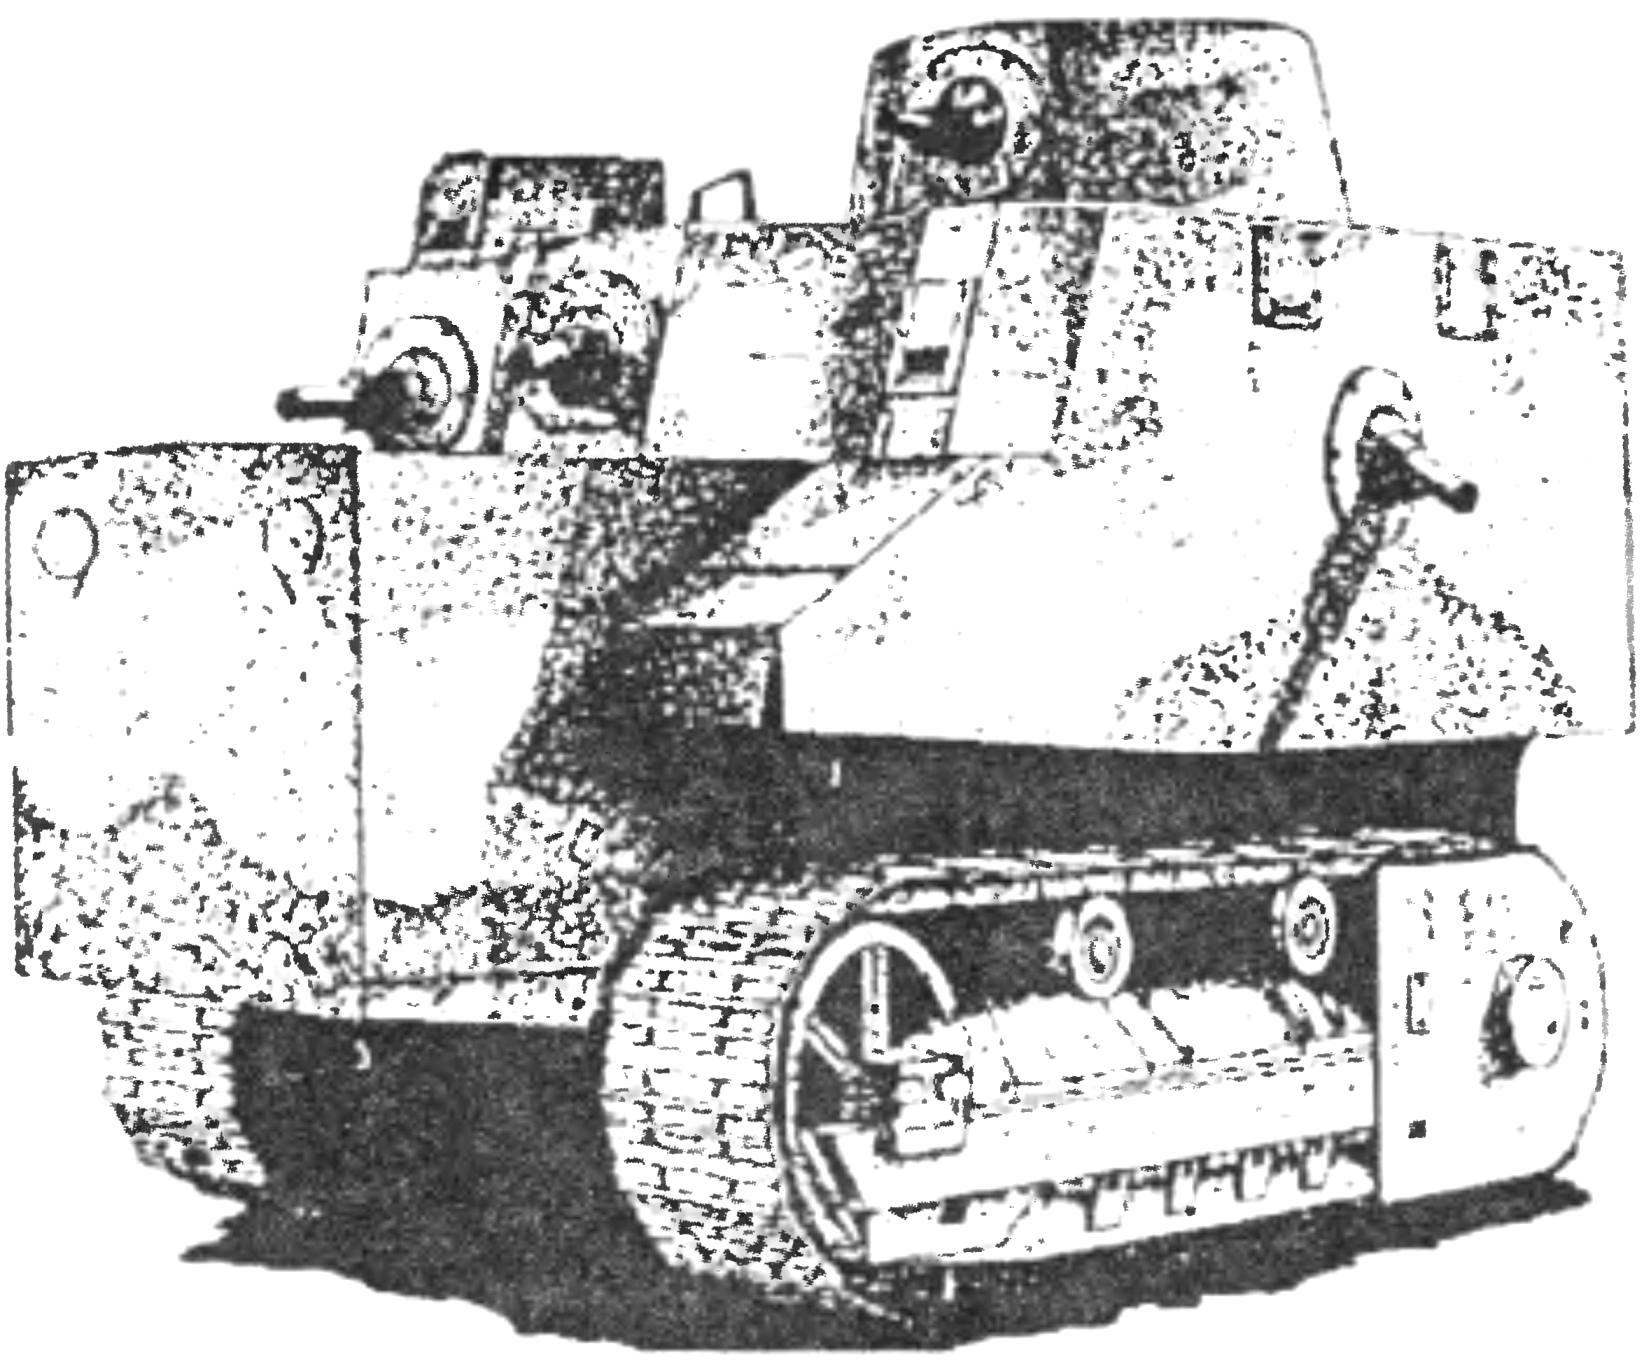 Первый образец танка Боба Сэмпла. Июнь 1940 г.